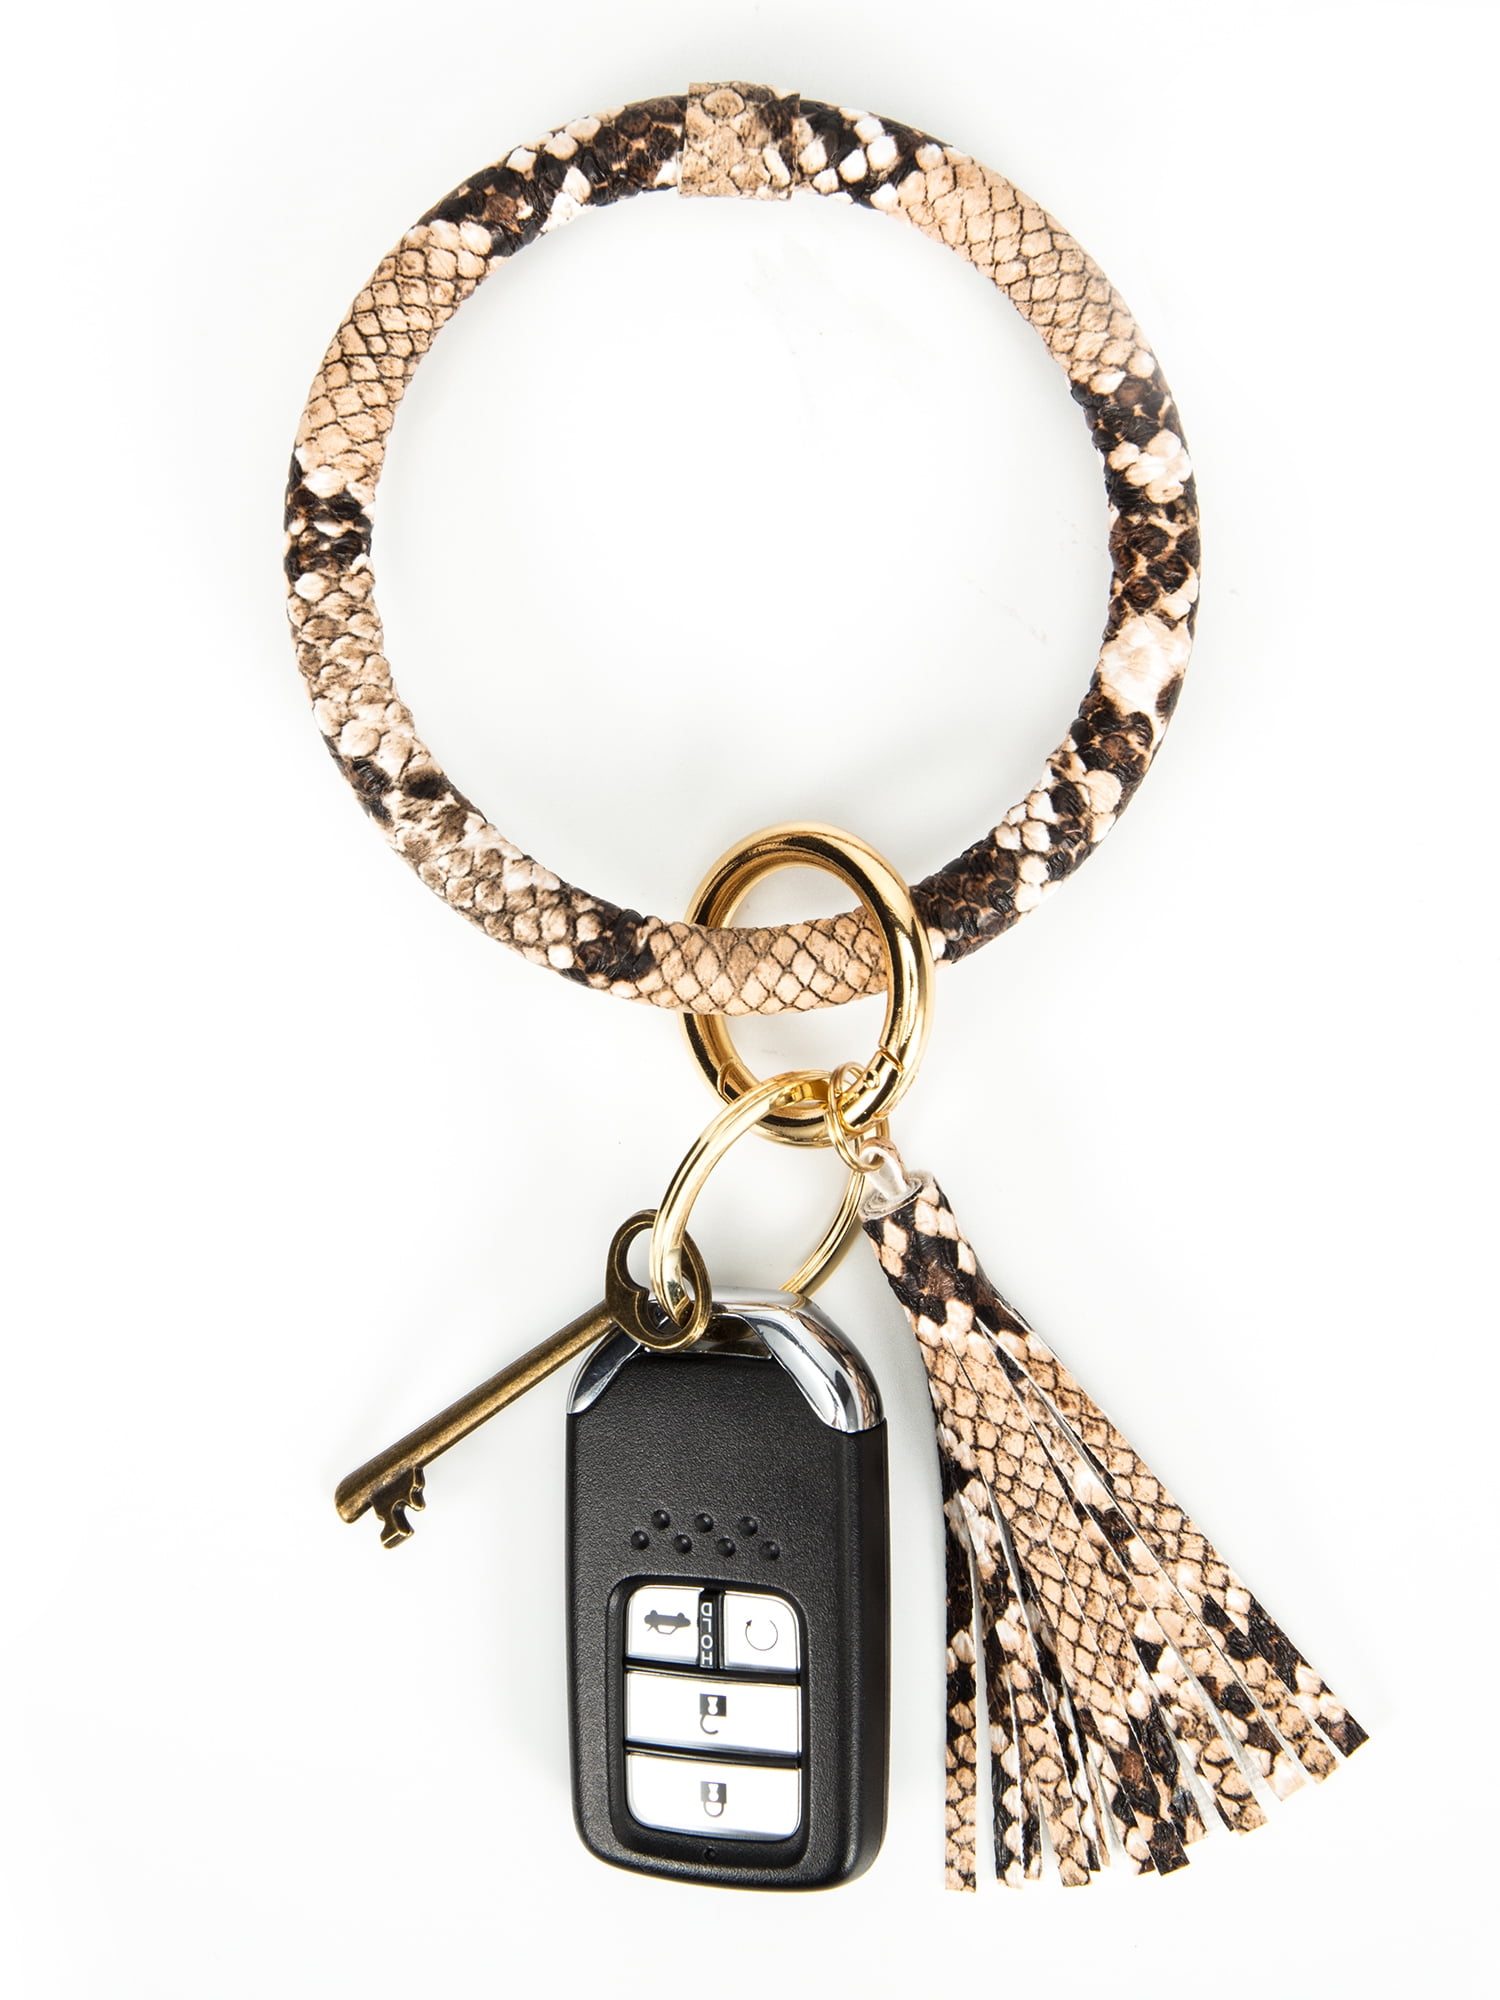 LELINTA Wristlet Keychain Leather Bracelet Keyring Bangle Round Shaped Key  Ring PU Bracelet Round Key Chain Ideal Gifts For Friends